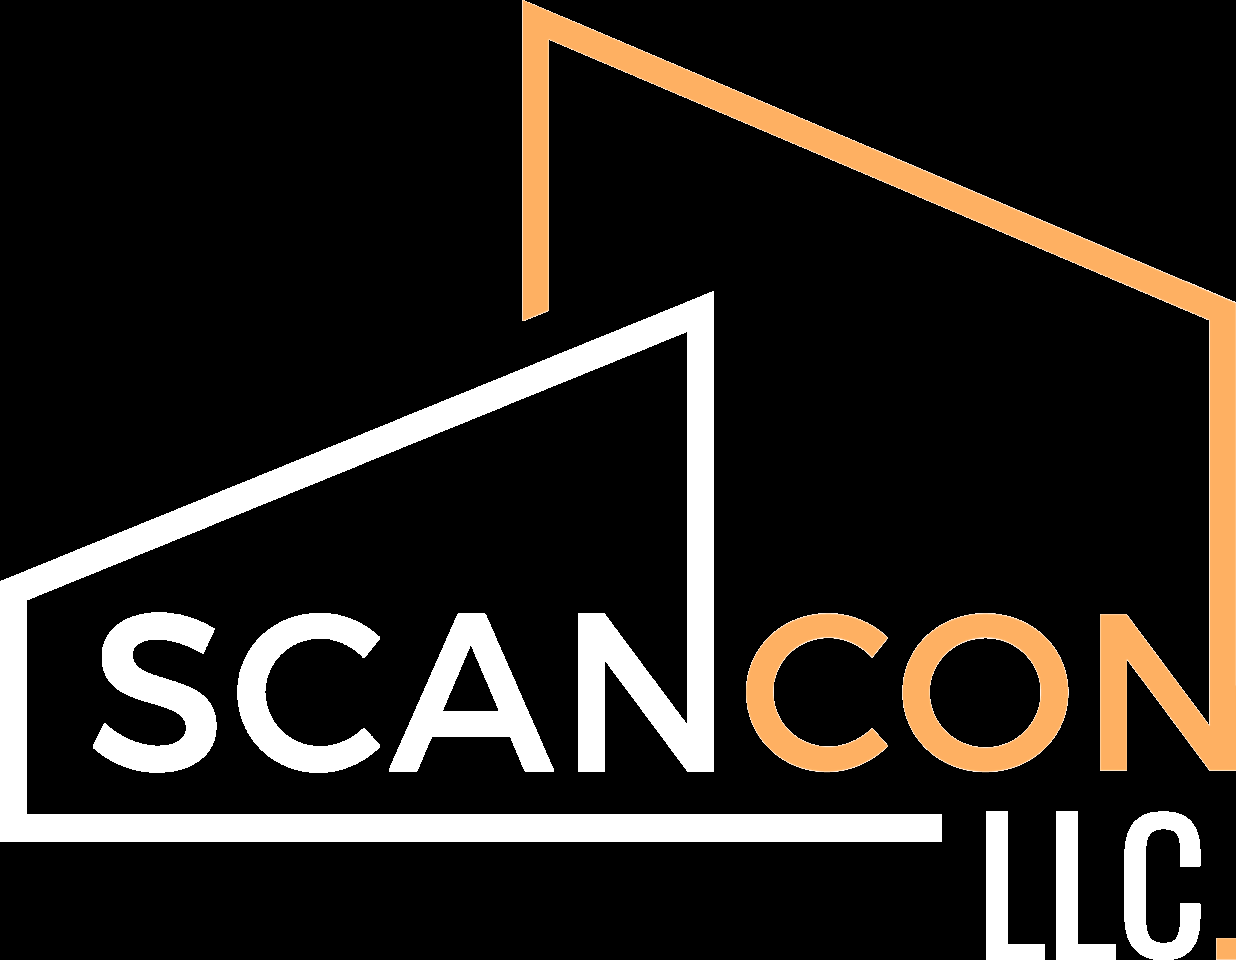 SCANCON, LLC